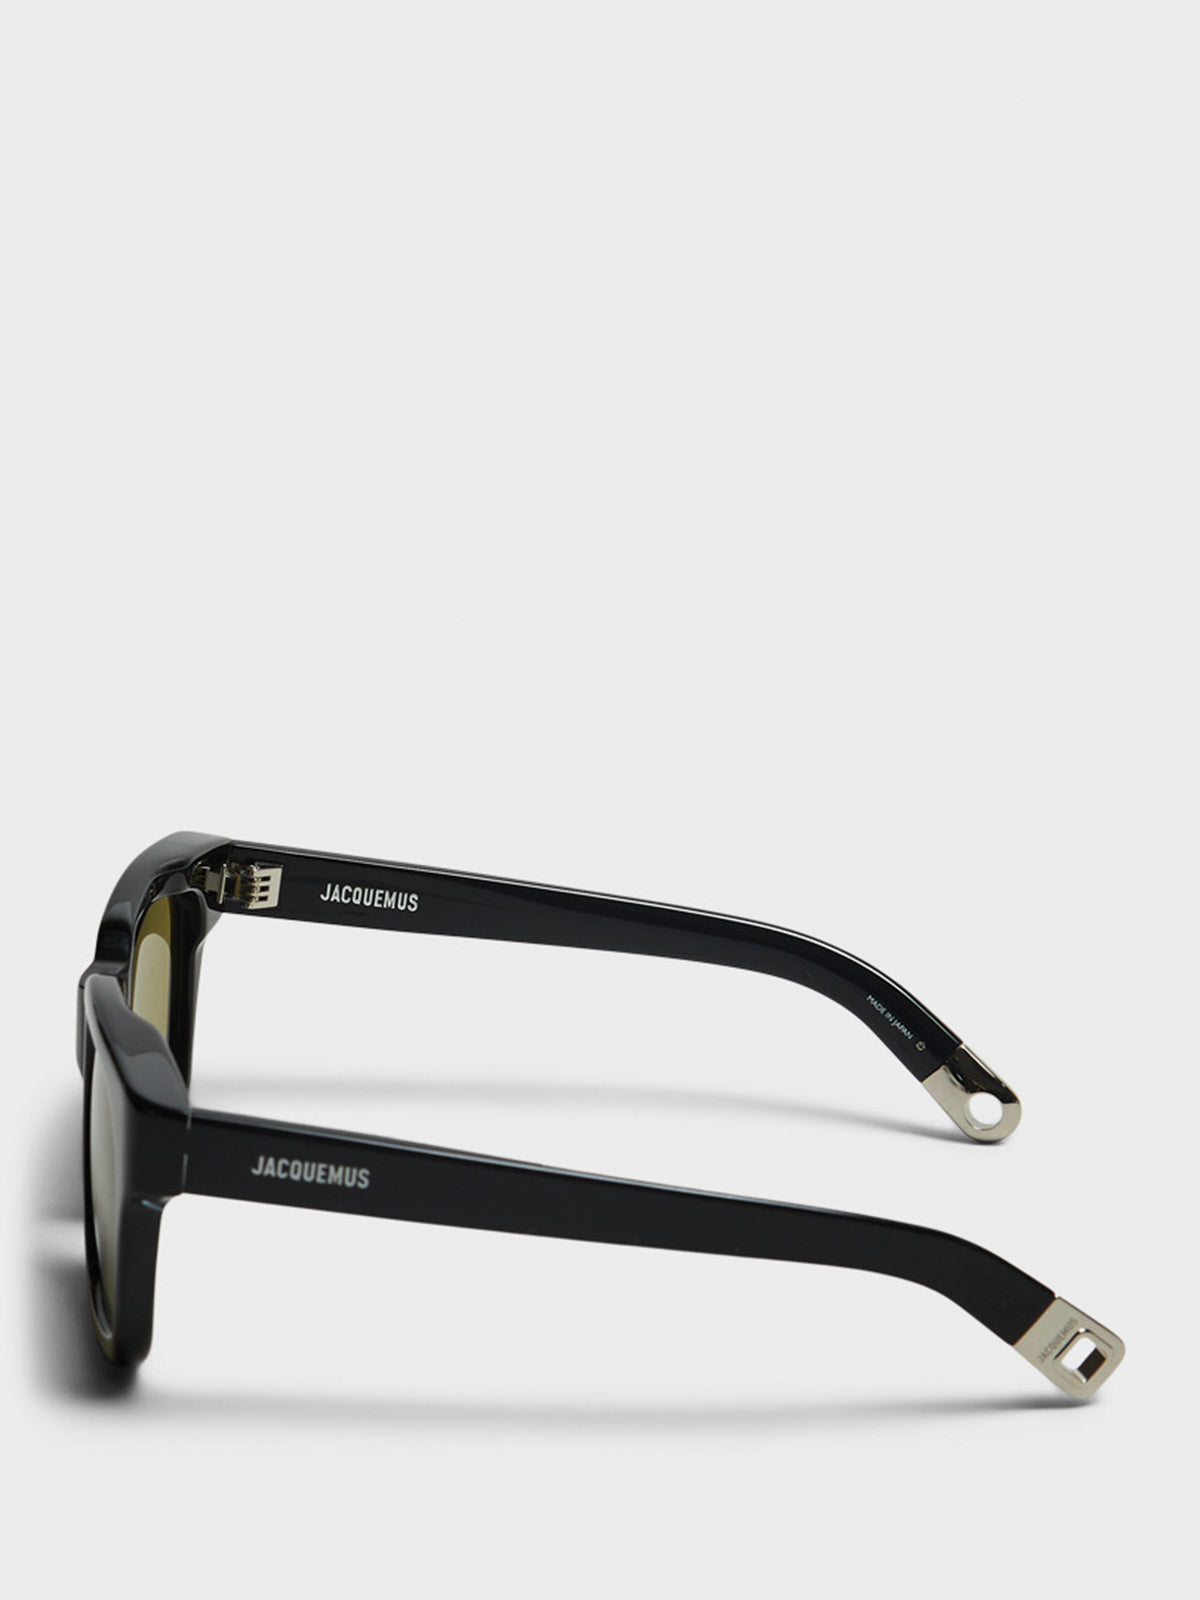 Carino Sunglasses in Black, Silver and Khaki